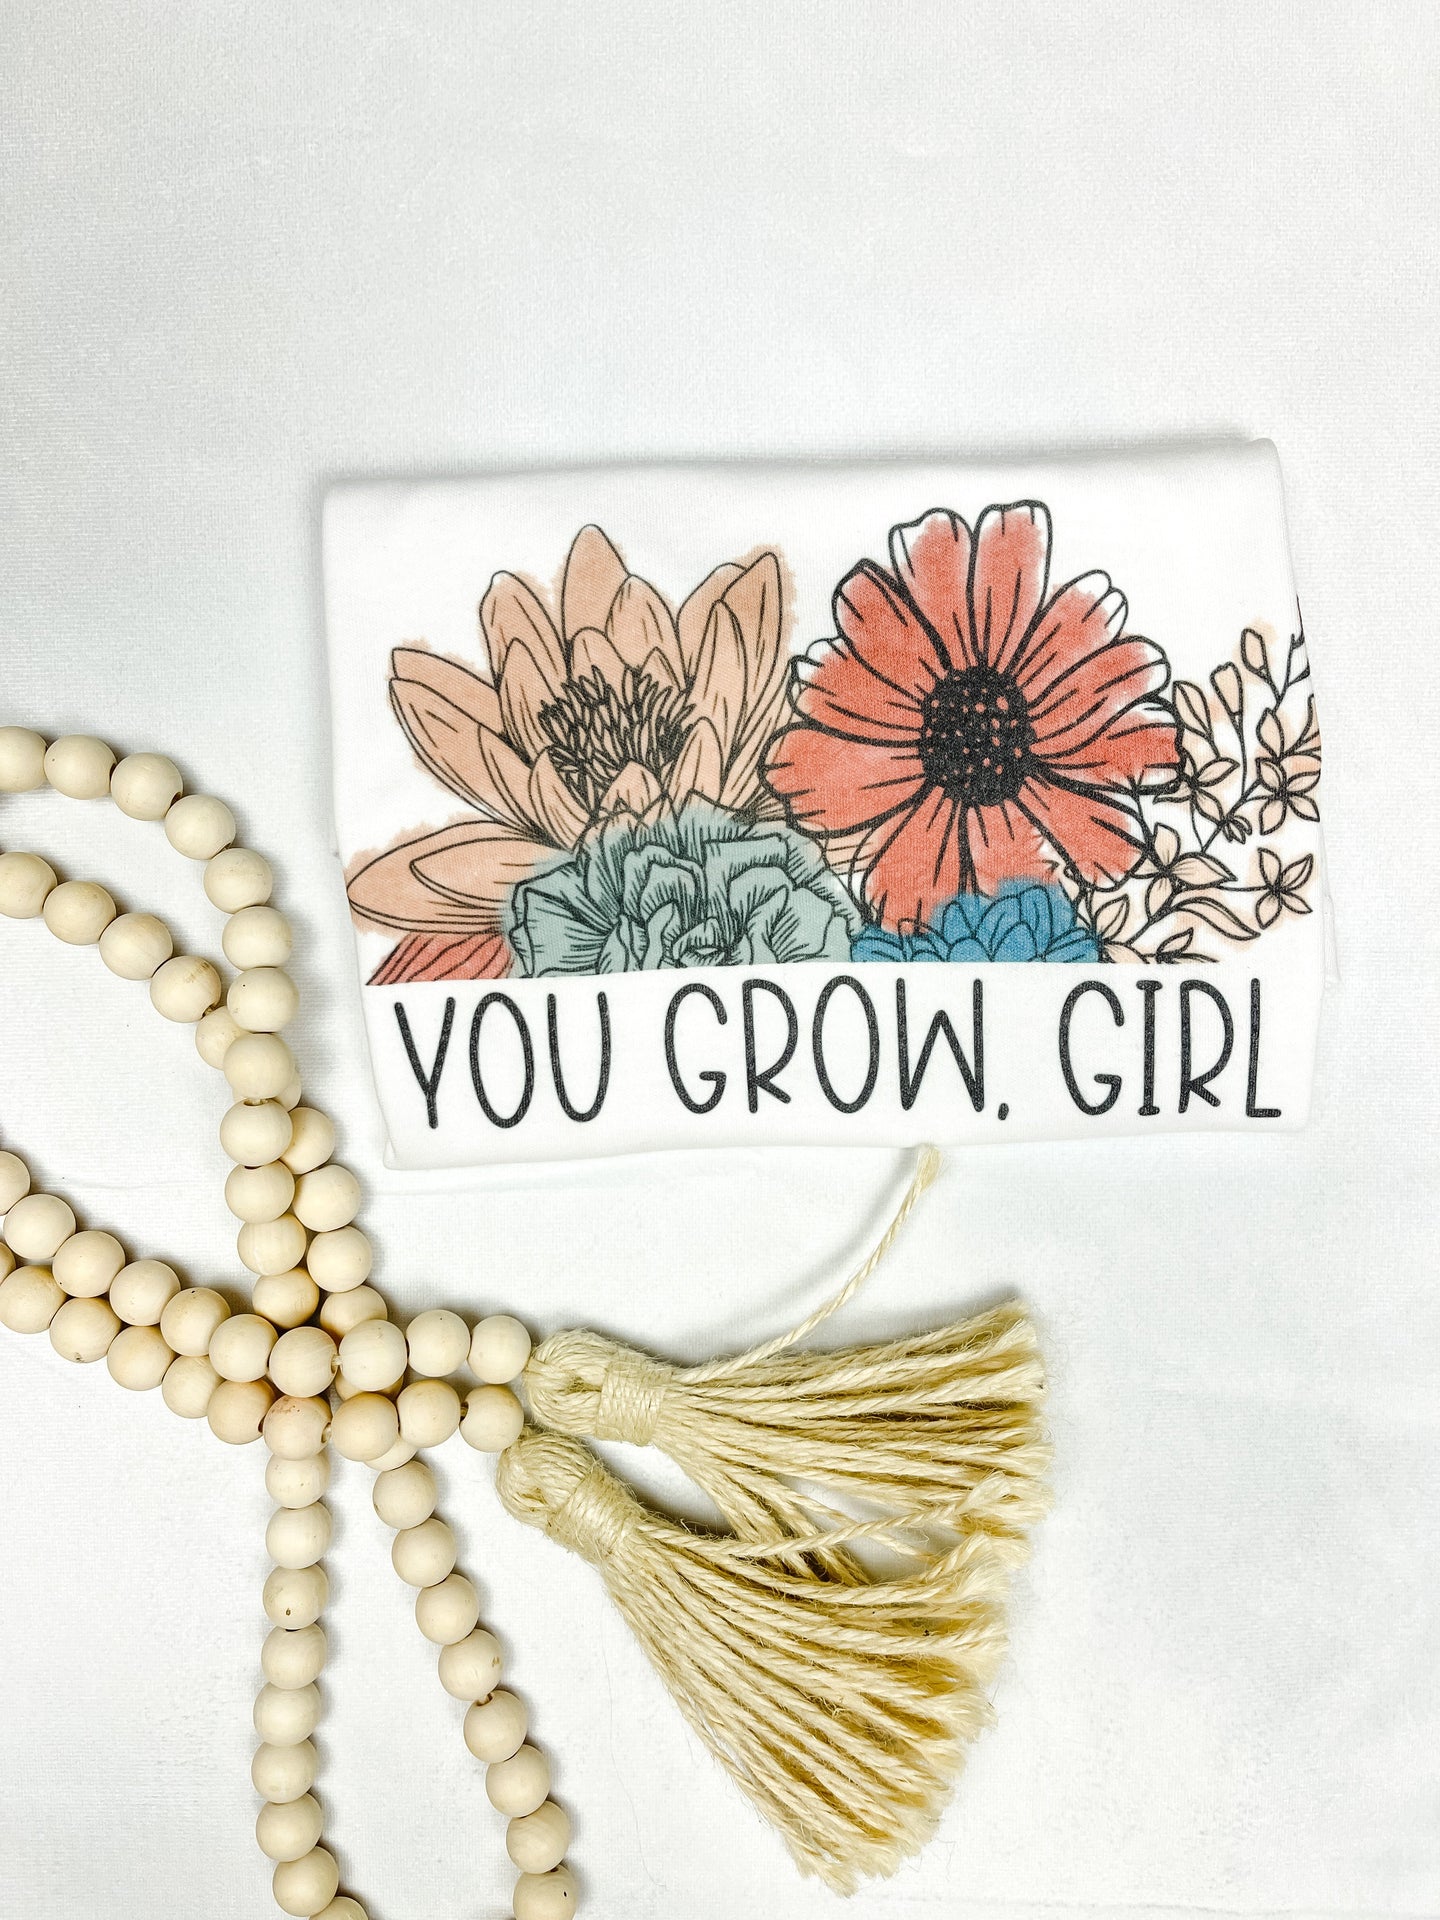 You grow girl